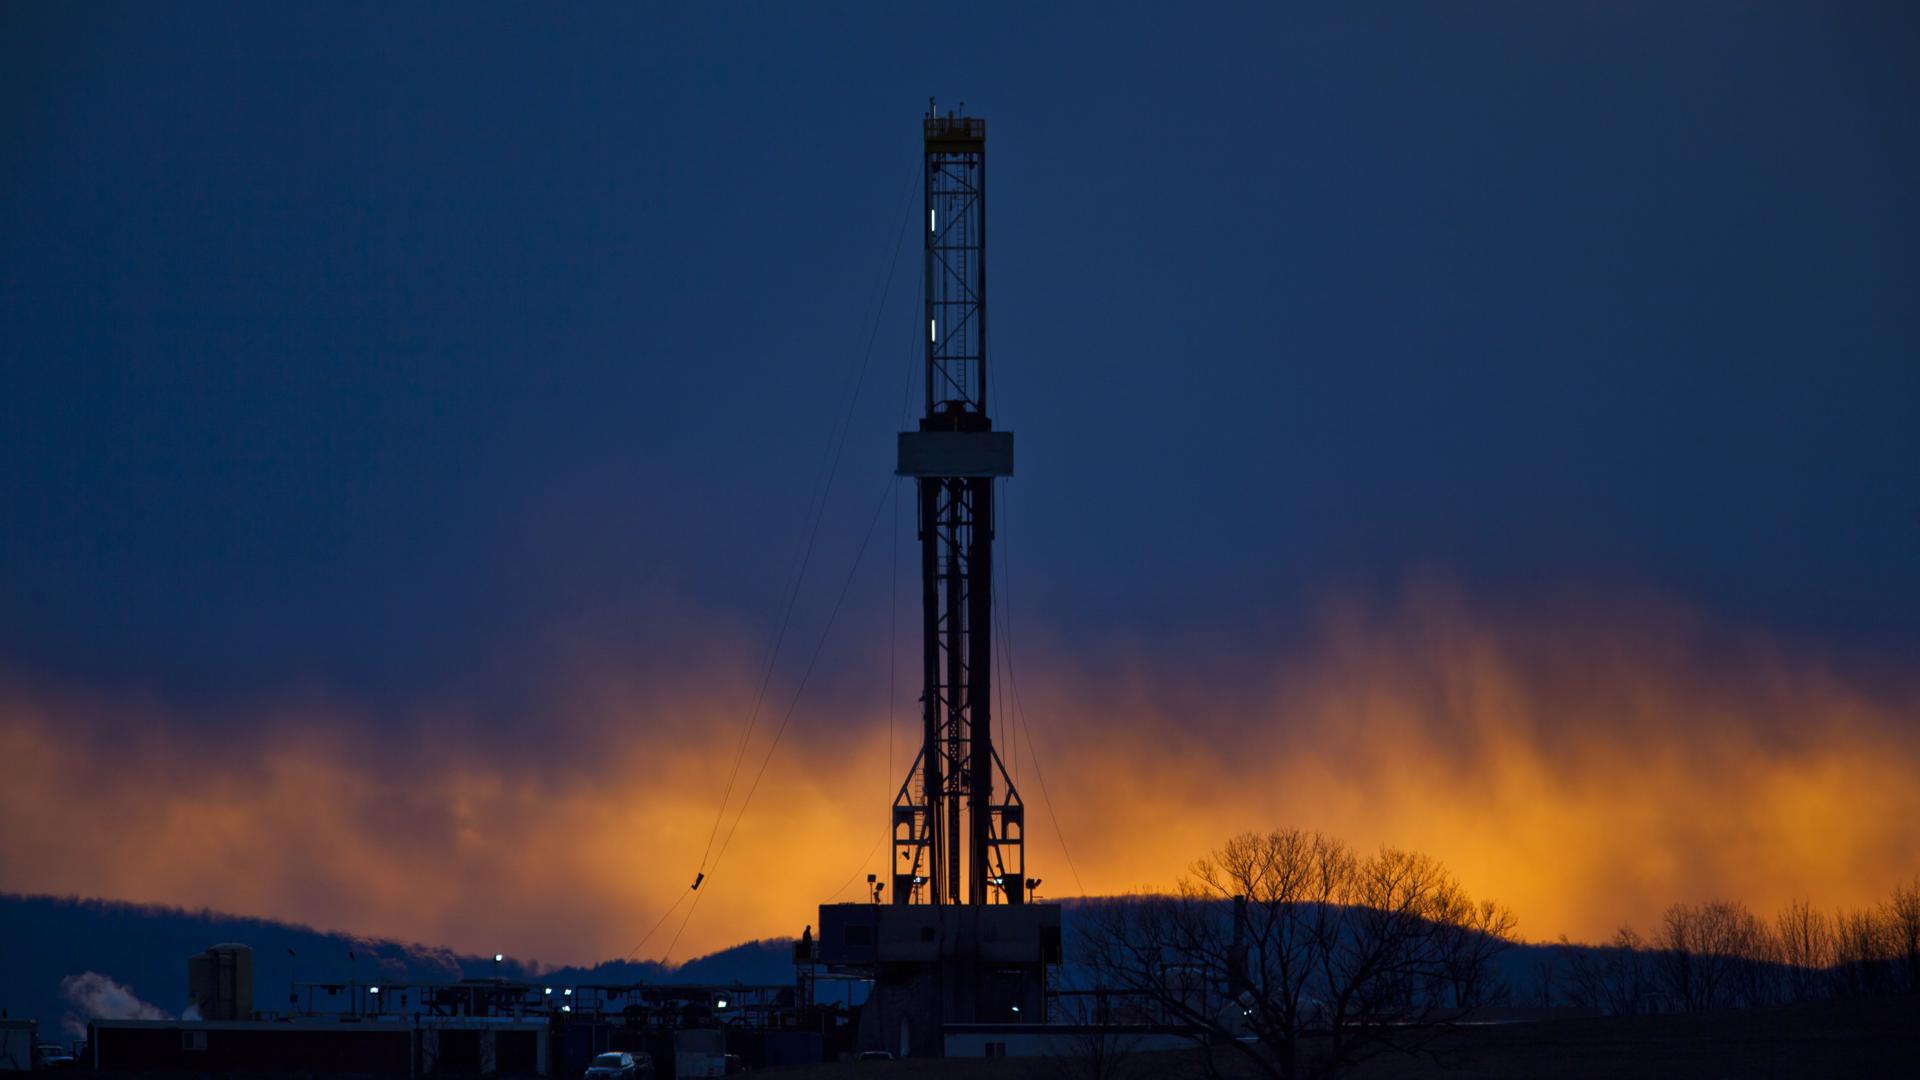 Der Bohrturm einer Ölförderplattform, die nach dem Prinzip des „Fracking“ arbeitet, ist in Tunkhannock als Sillhouette zu sehen.